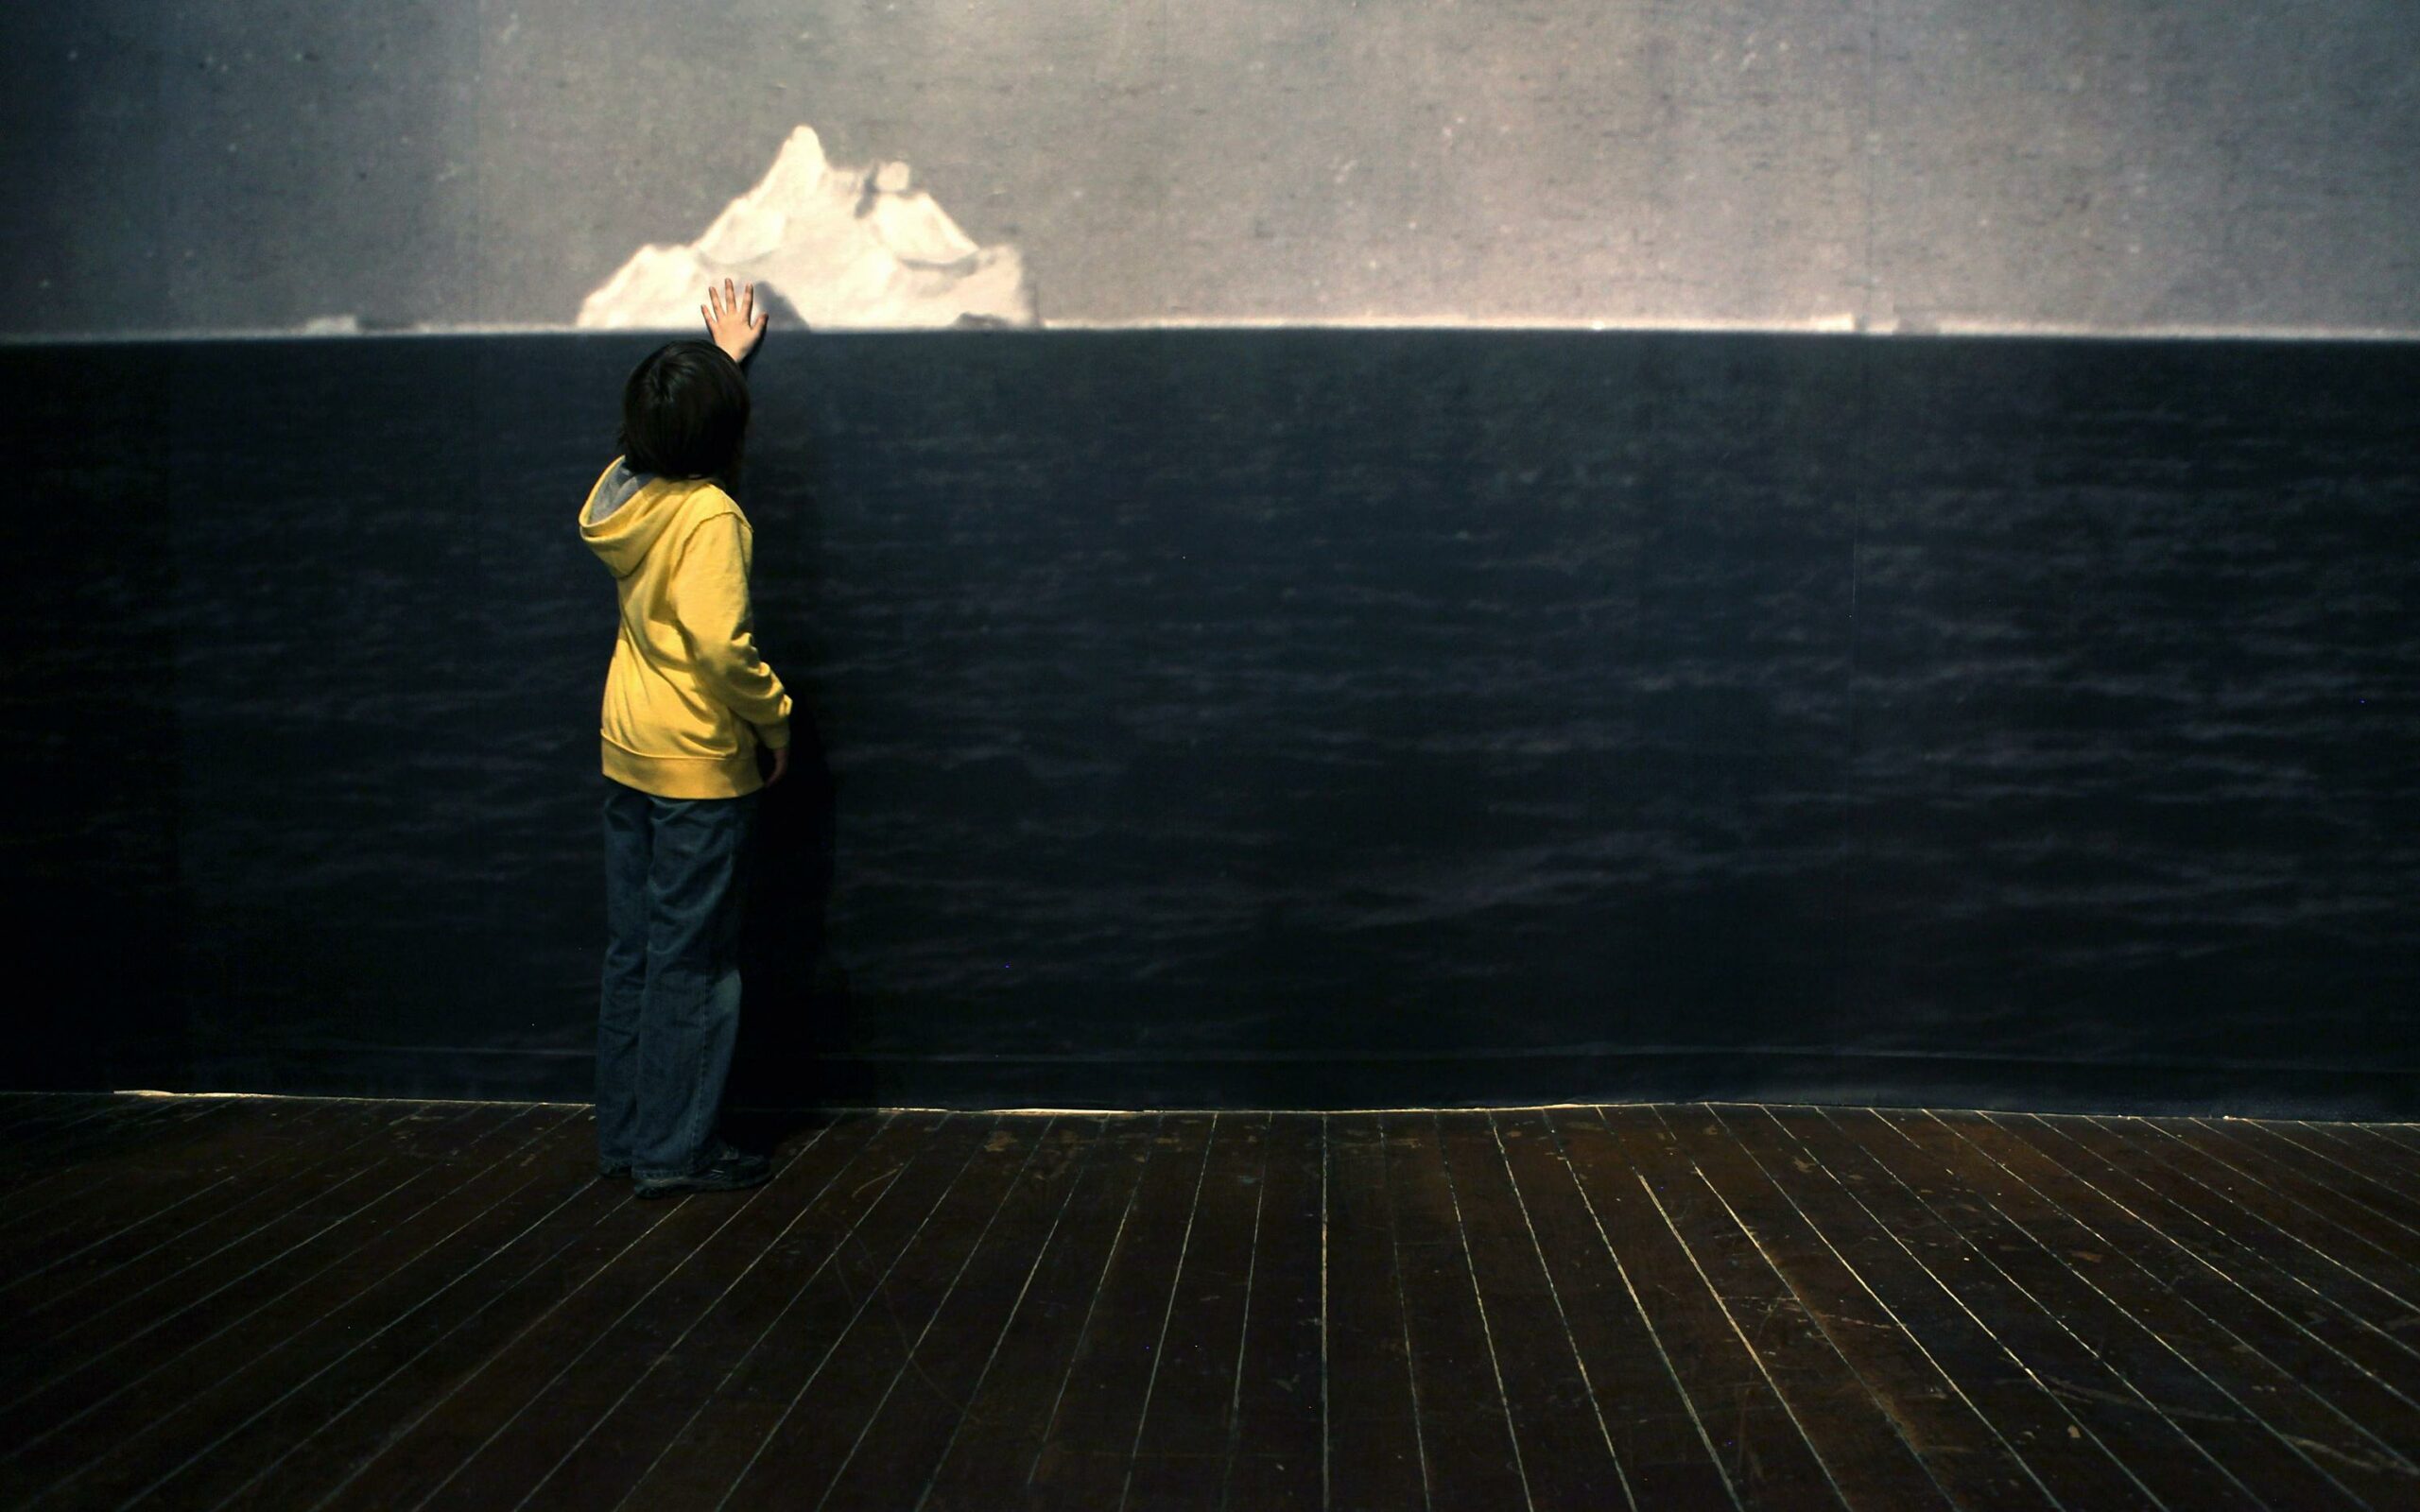 Фотография айсберга, сделанная после крушения британского пассажирского лайнера «Титаник». Выставка в Нью-Йорке, 2012 год